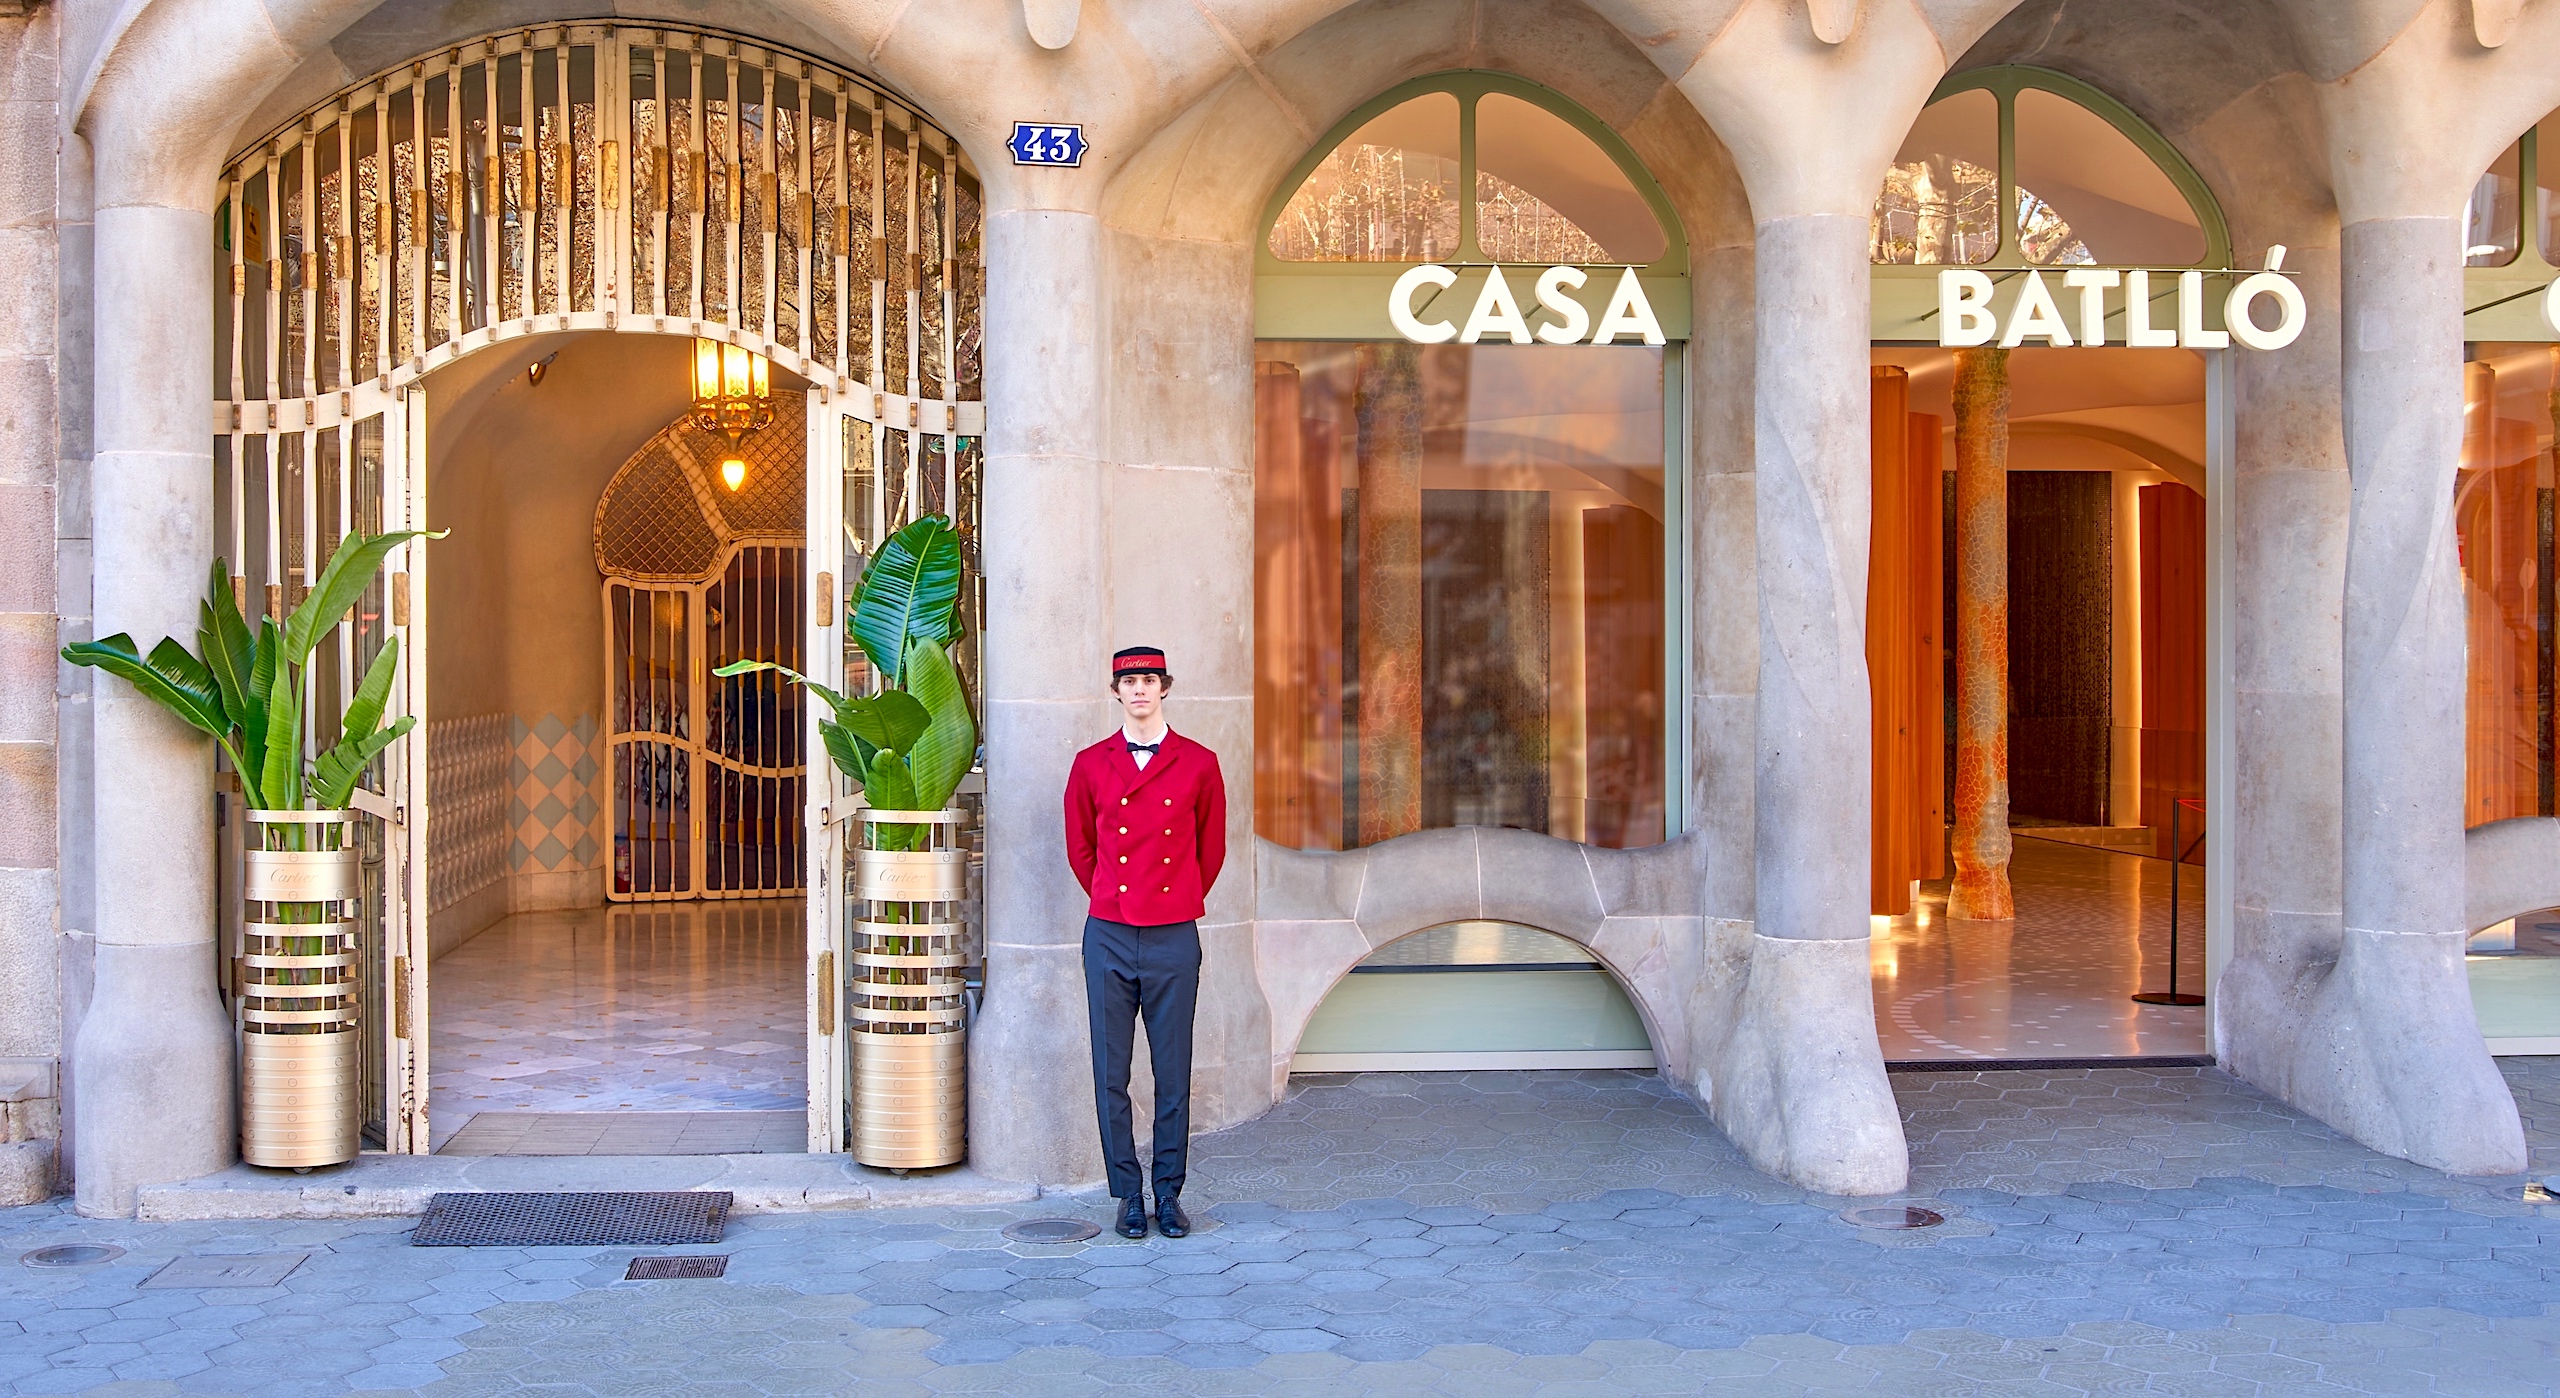 Cartier se instala en la Casa Batlló - cover